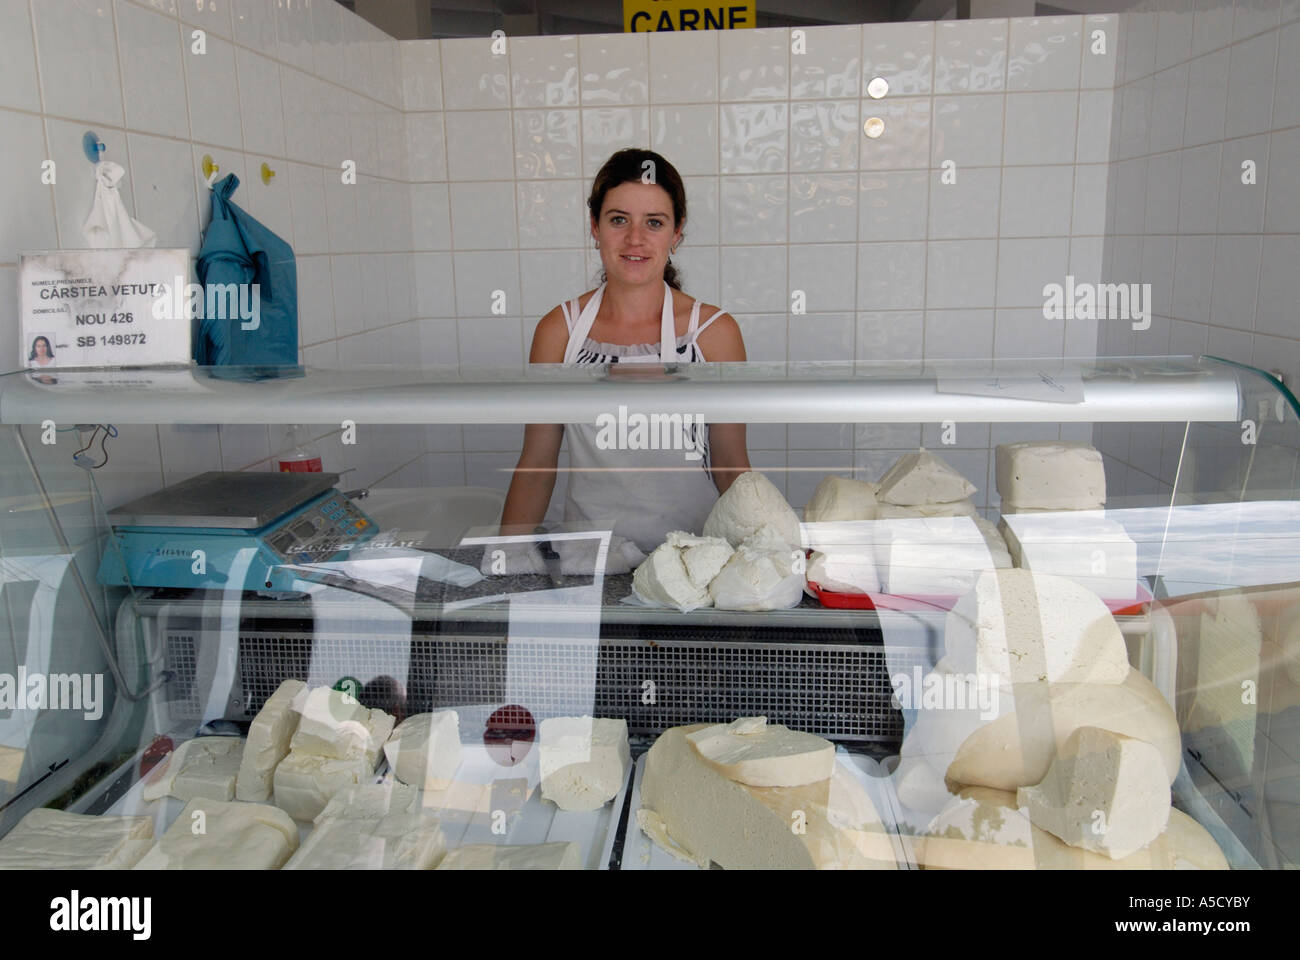 Roumanie Sibiu. Capitale européenne de la Culture 2007. Vendeur de fromage dans le nouveau marché couvert Banque D'Images